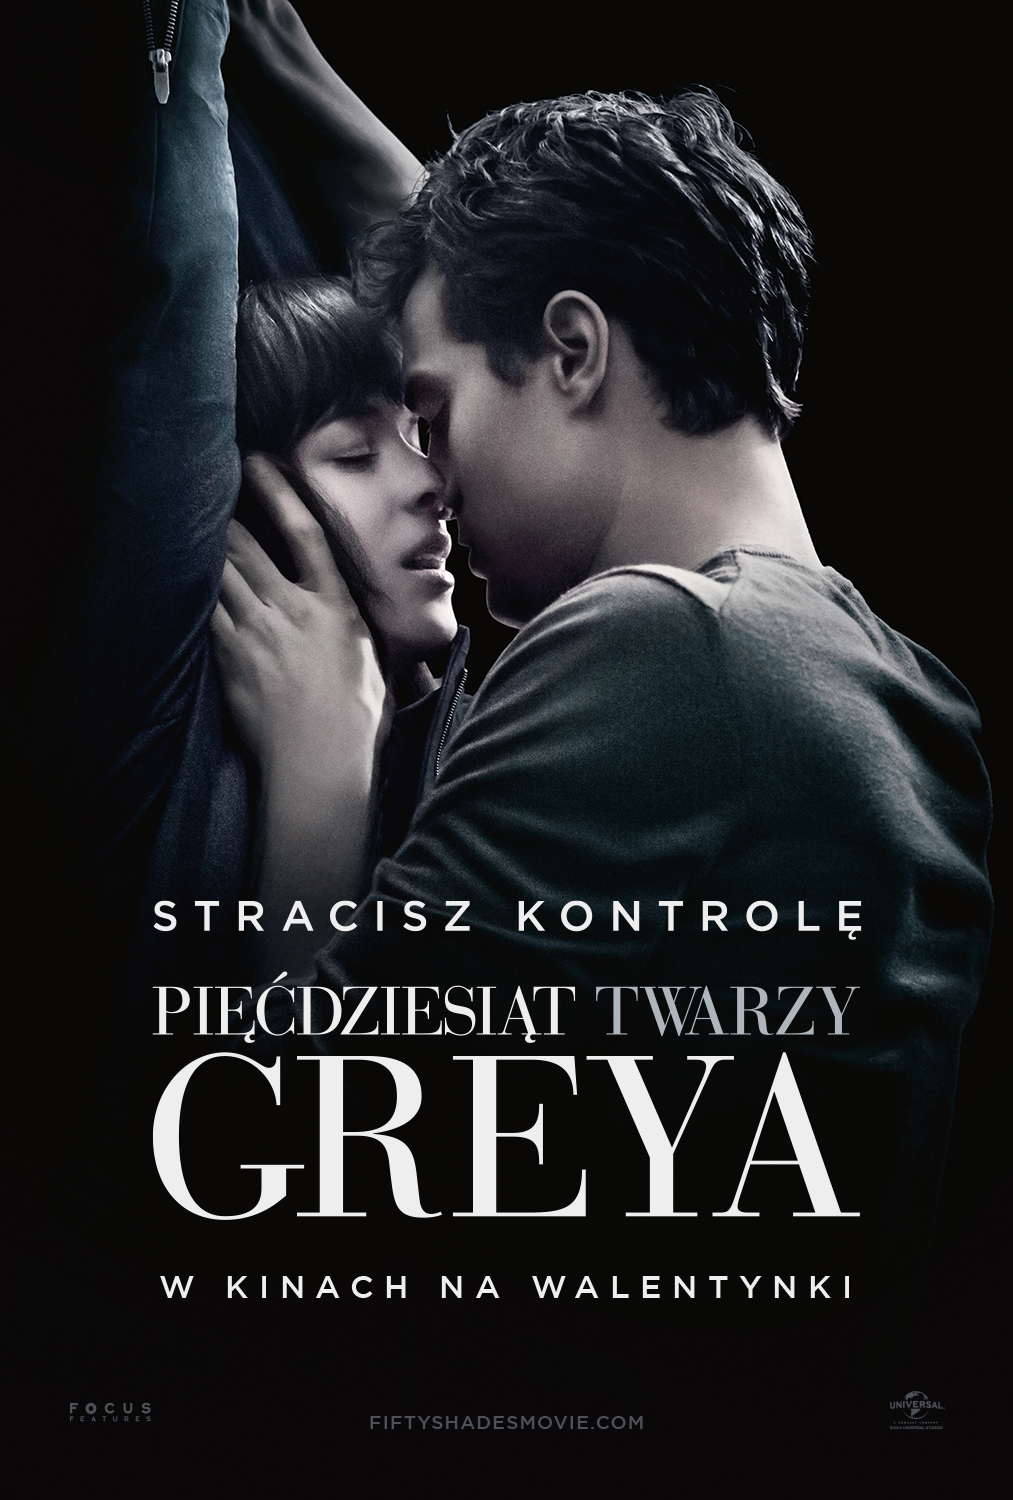 Premiera "Pięćdziesięciu twarzy Greya" w Walentynki w sali kinowej MGOK